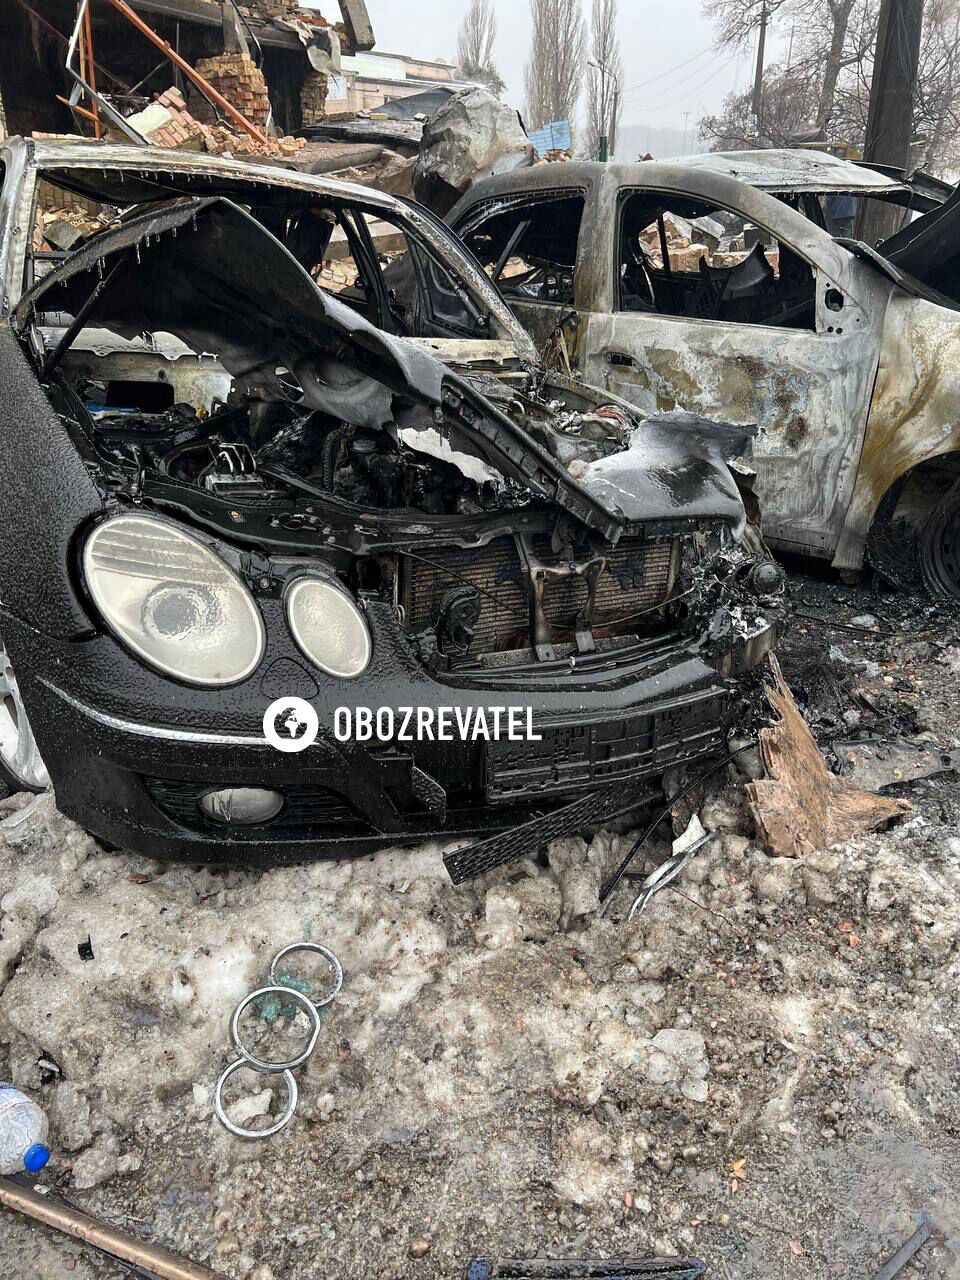 Сгоревшие машины и лампадки: что происходит на месте прилета ракеты в Киеве. Фото и видео